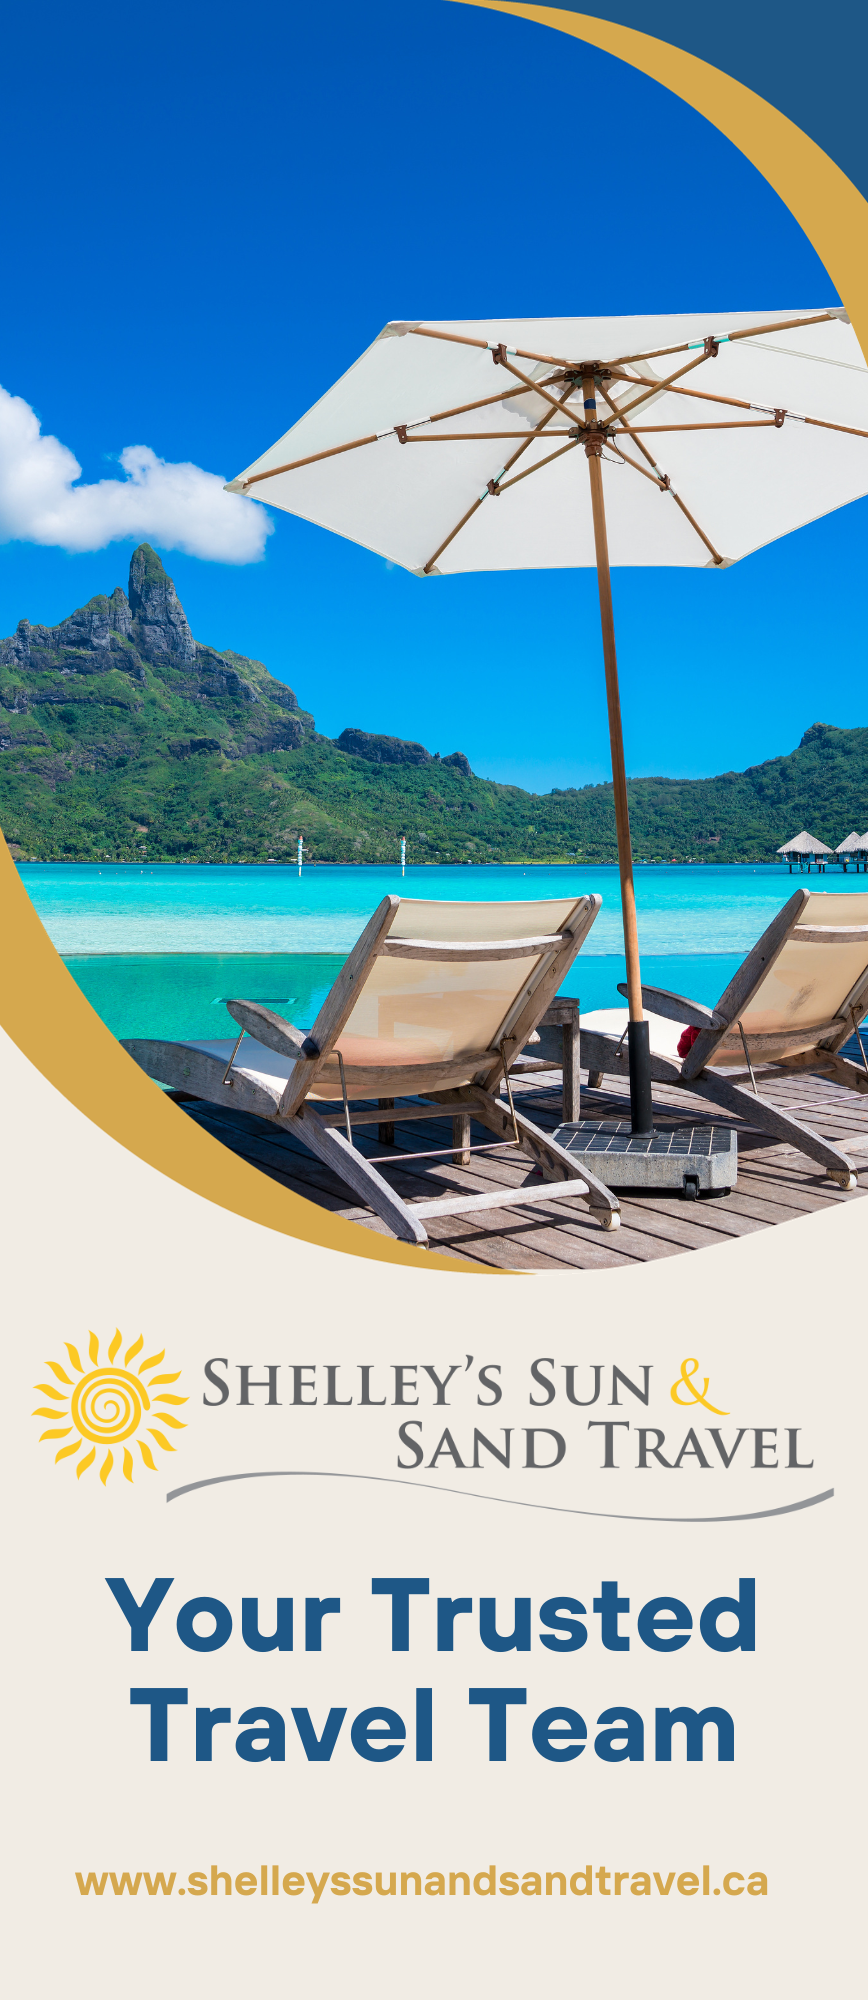 shelley's sun & sand travel